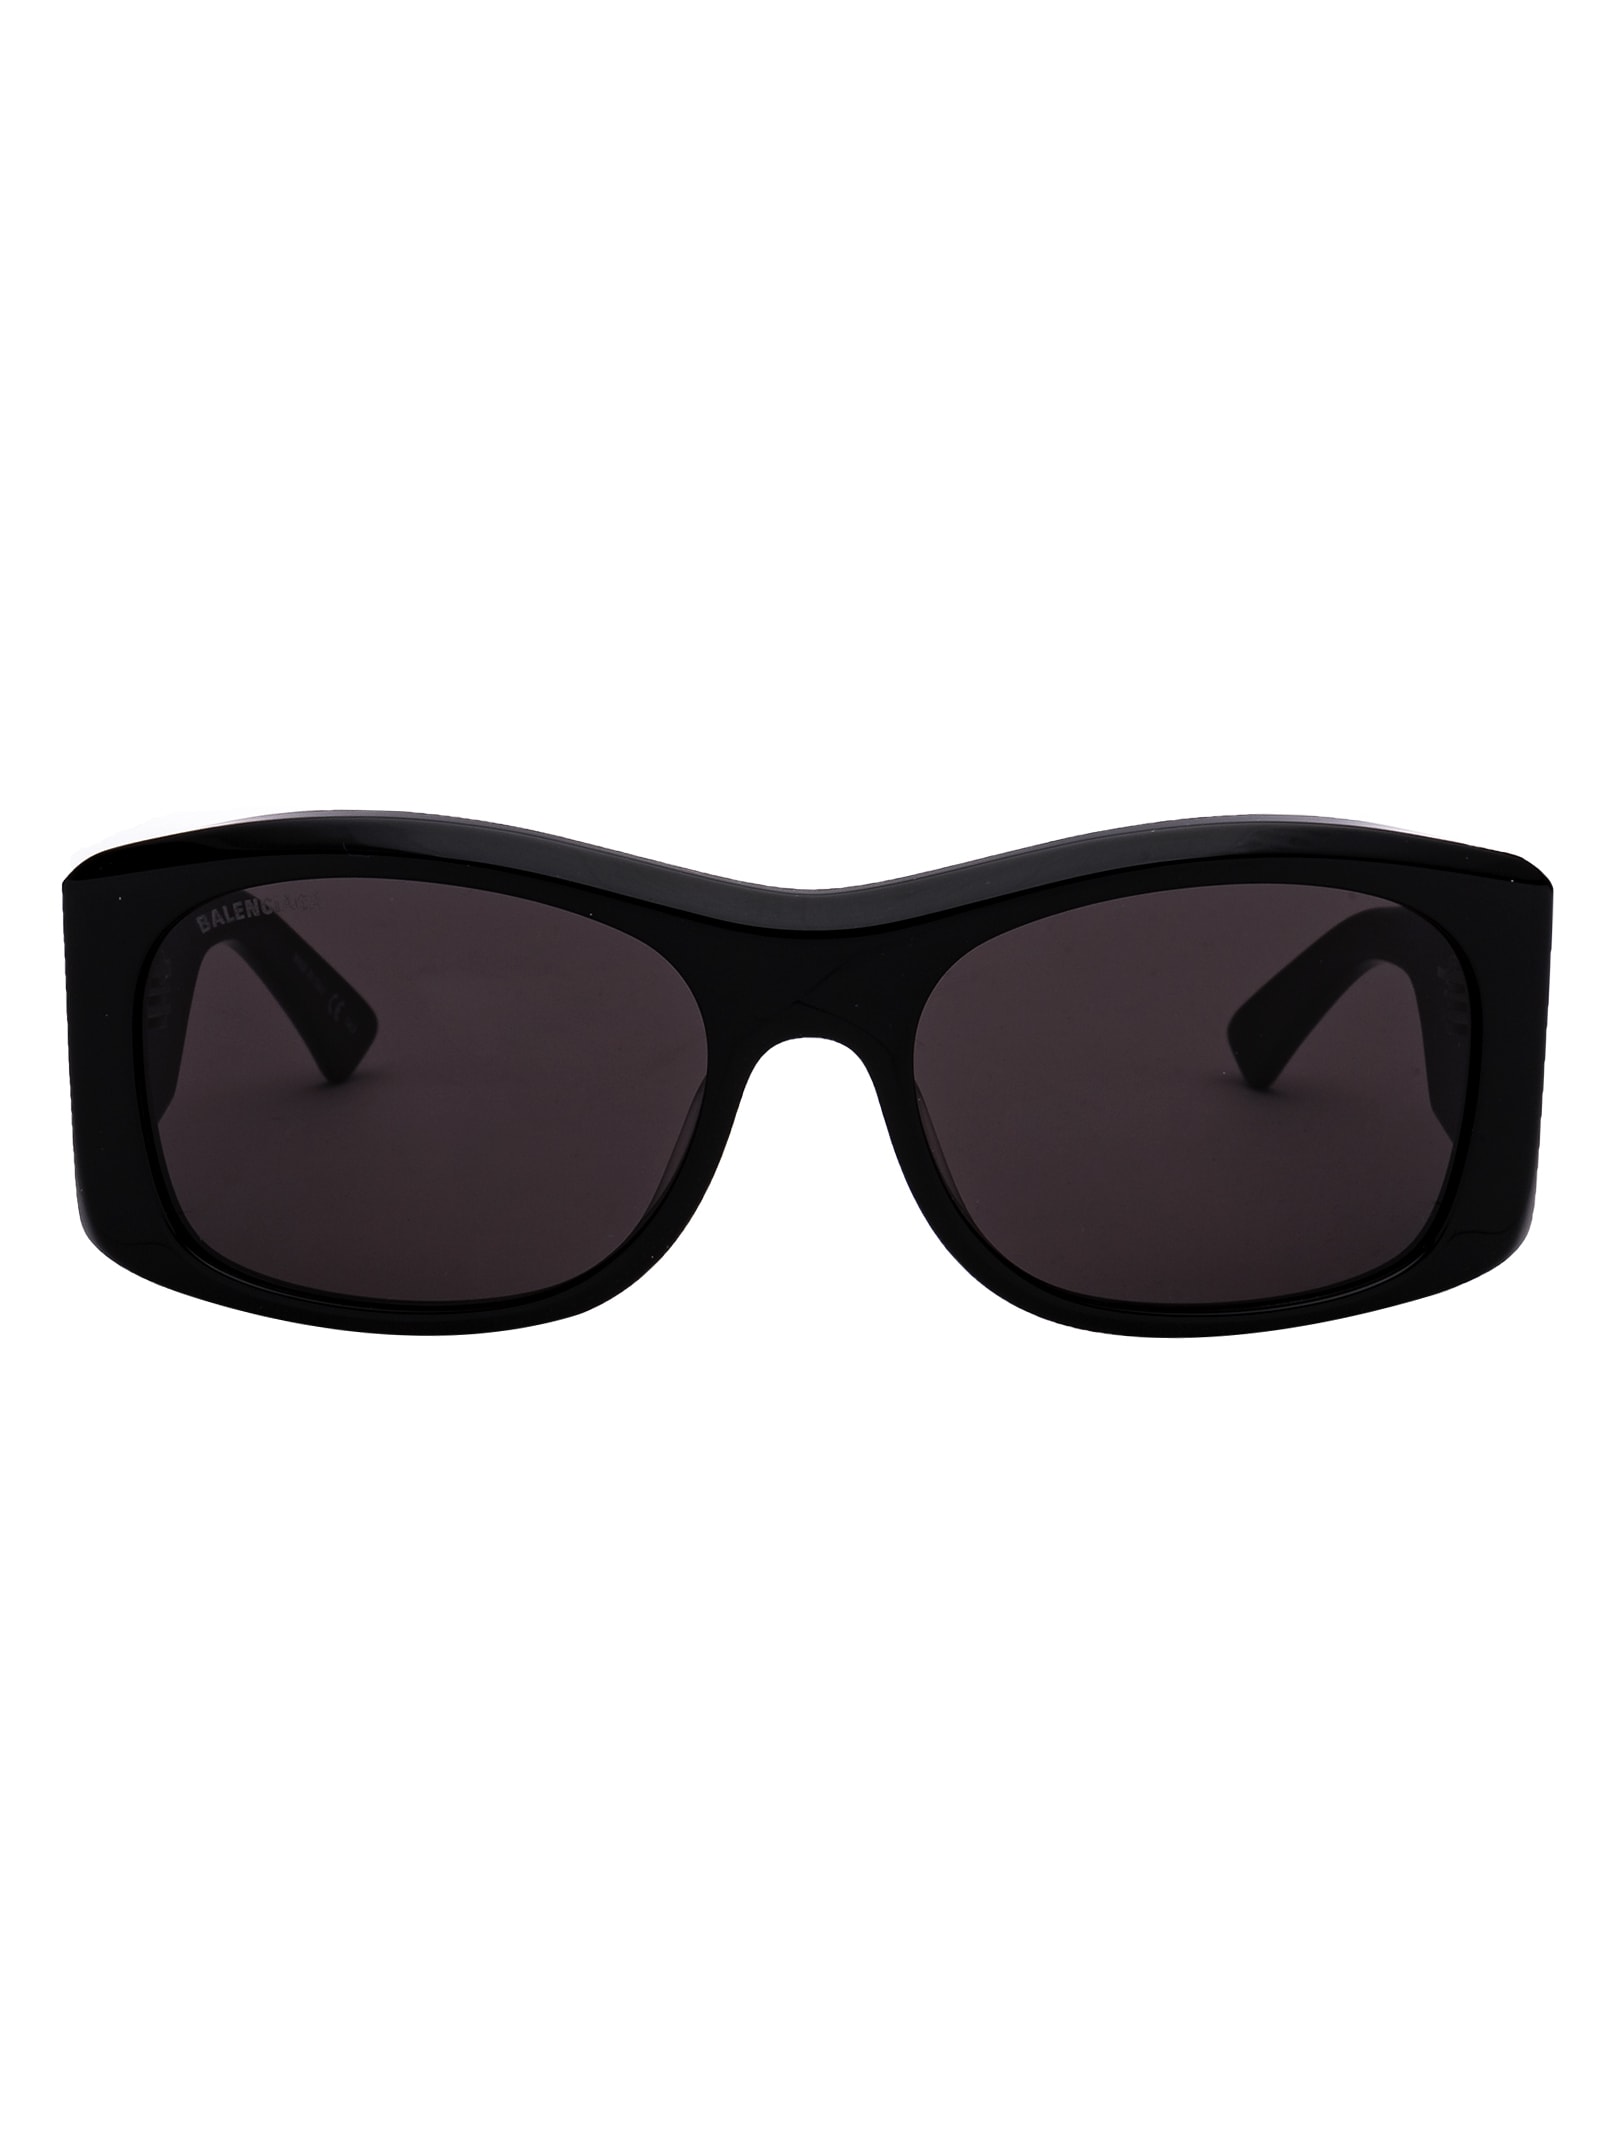 Balenciaga Sunglasses In Black Black Grey | ModeSens